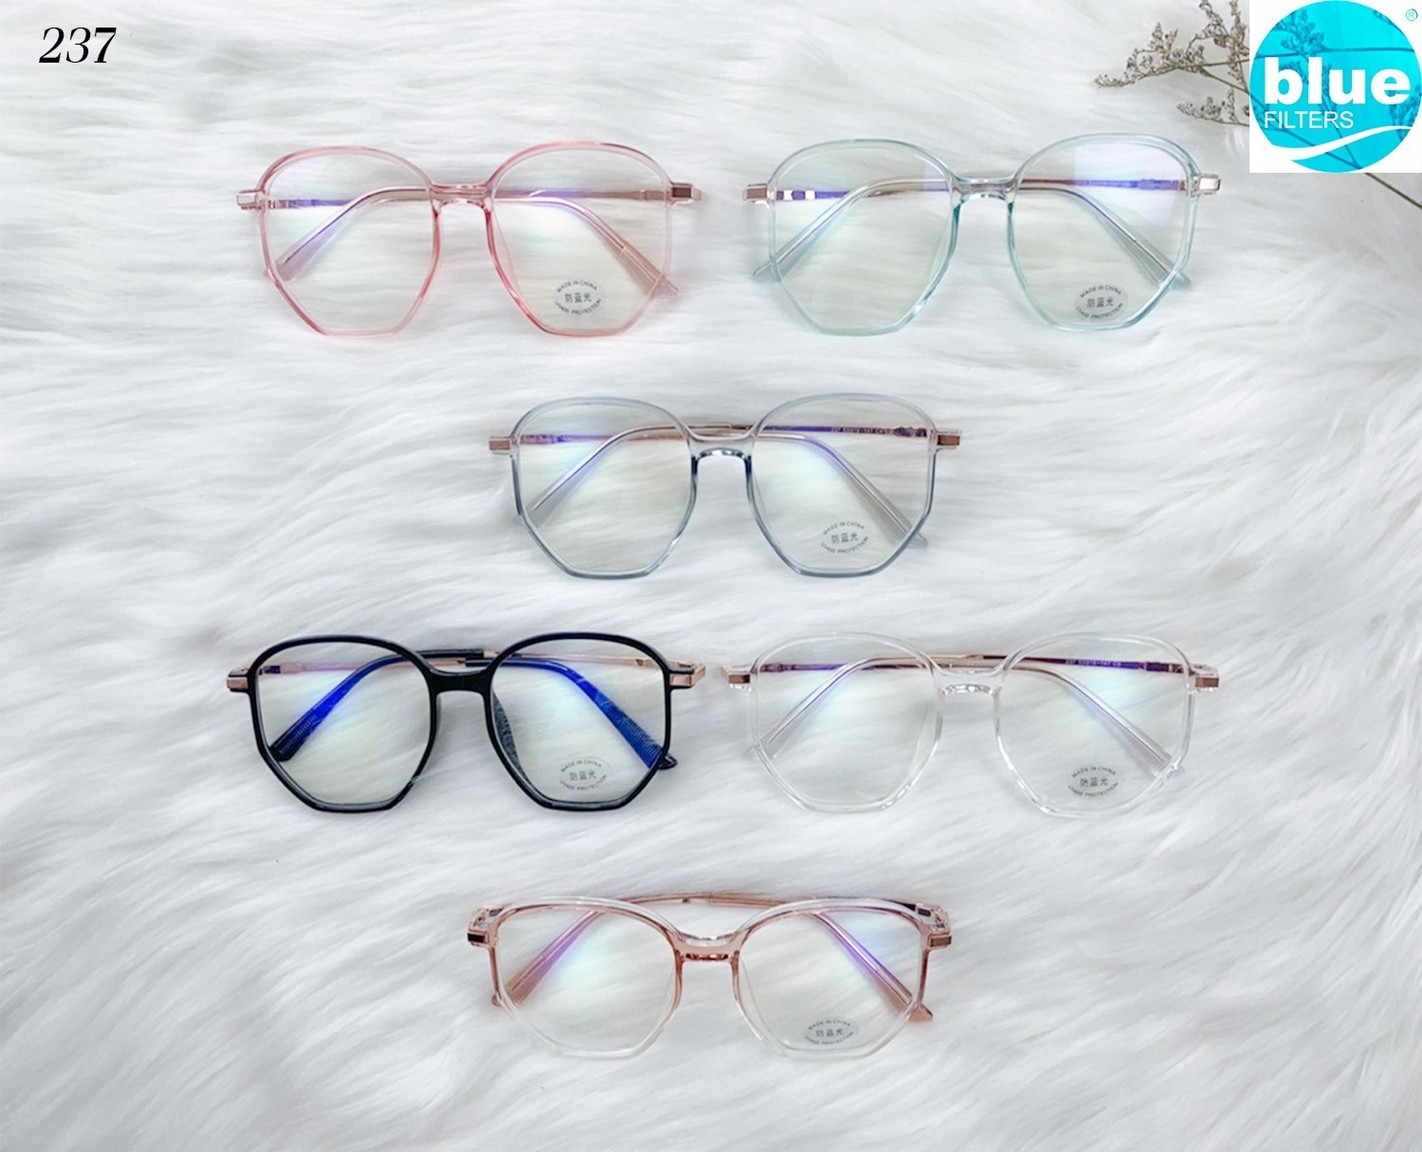 แว่นกรองแสง แว่นสายตา แว่นกันแดด แว่นตา แว่นแฟชั่น กันUV400 แว่นกรองแสงฟ้า แว่นกรองแสงคอม / มือถือ แว่นกรองแสงสีฟ้าได้จริง!!